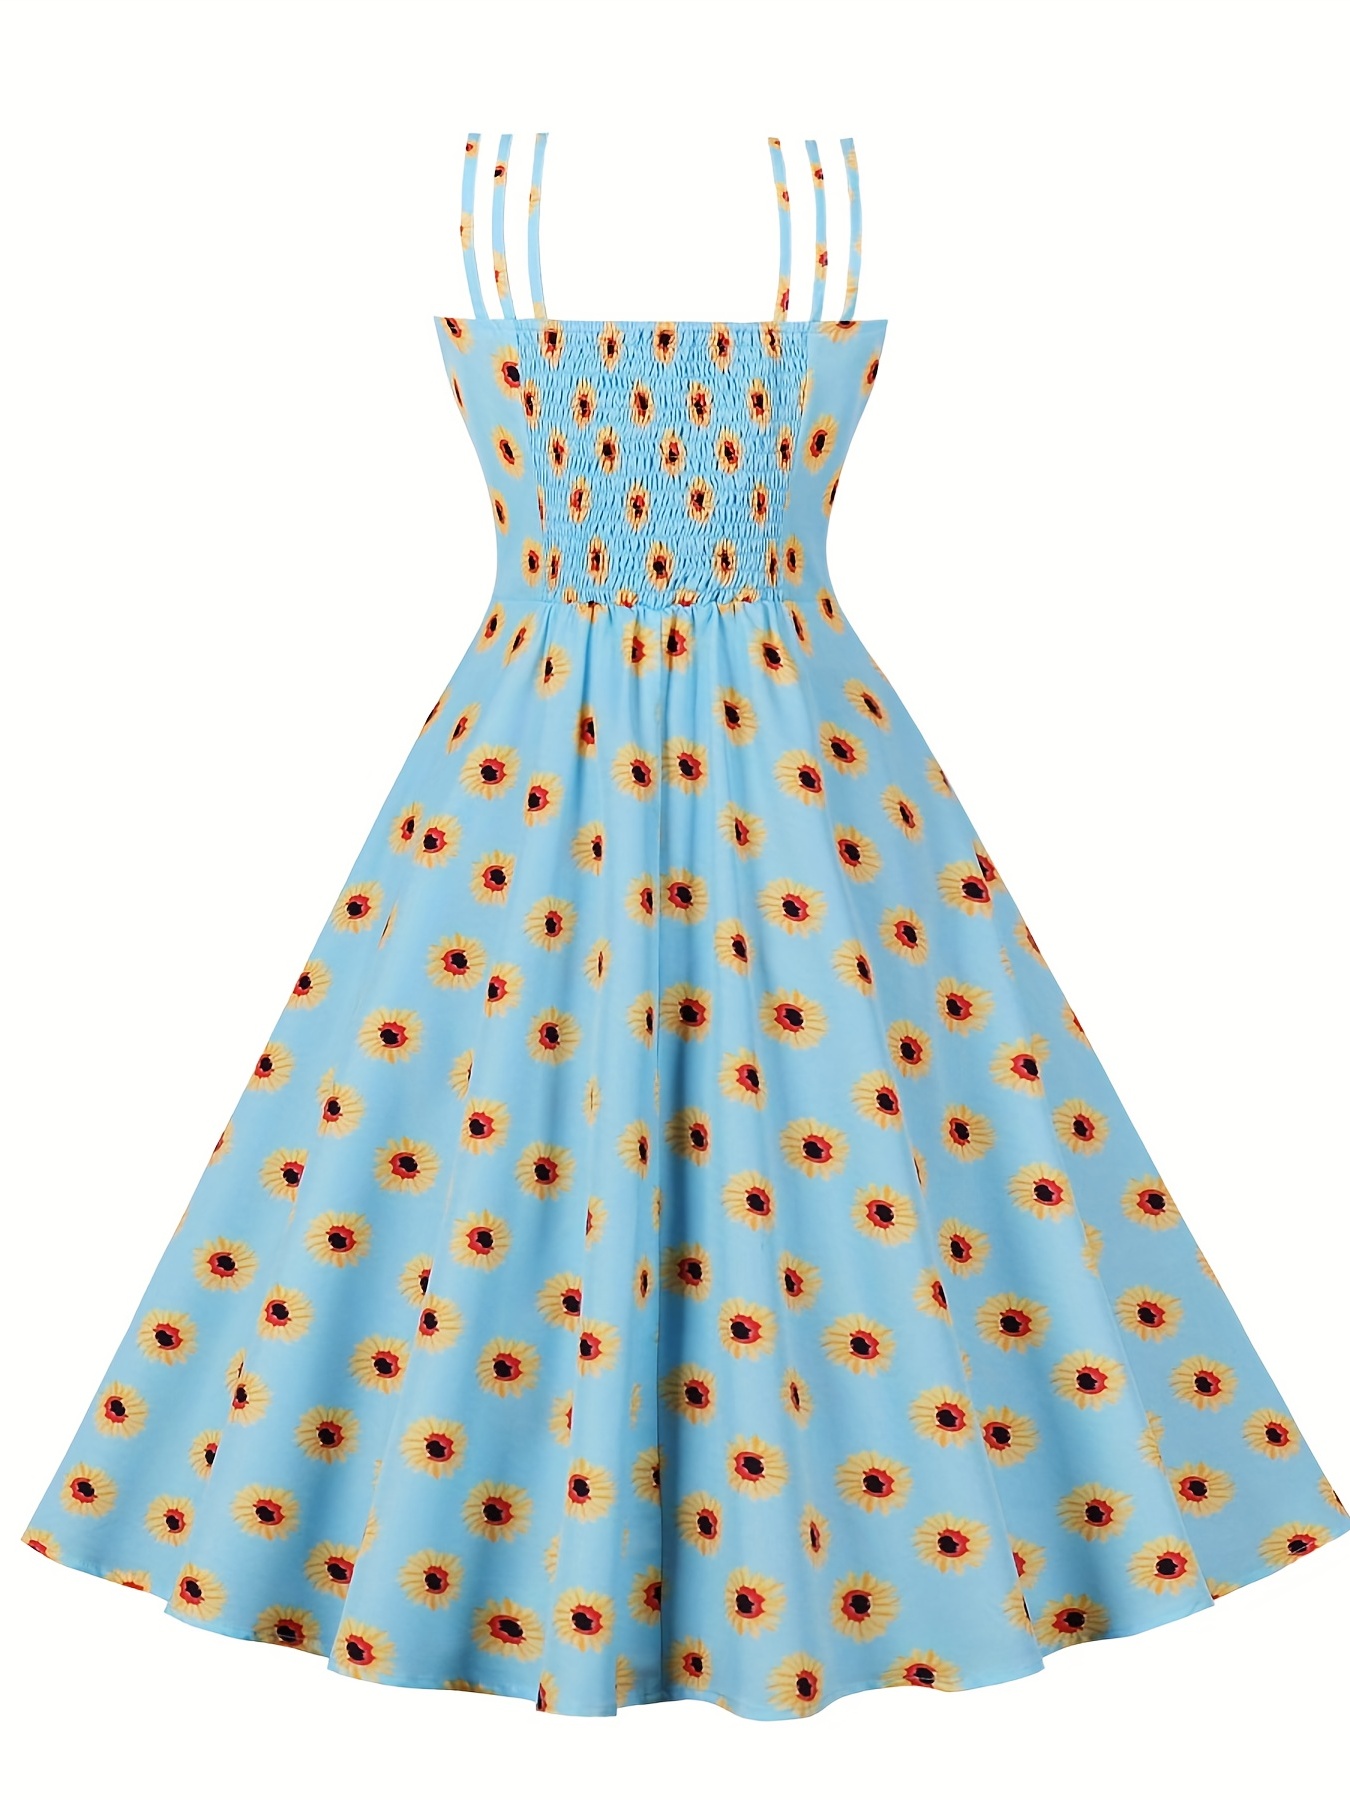 Vintage Dresses for Women 1950s One Shoulder Polka Dots Rockabilly Swing  Dress A Line Formal Cocktail Dress for Women